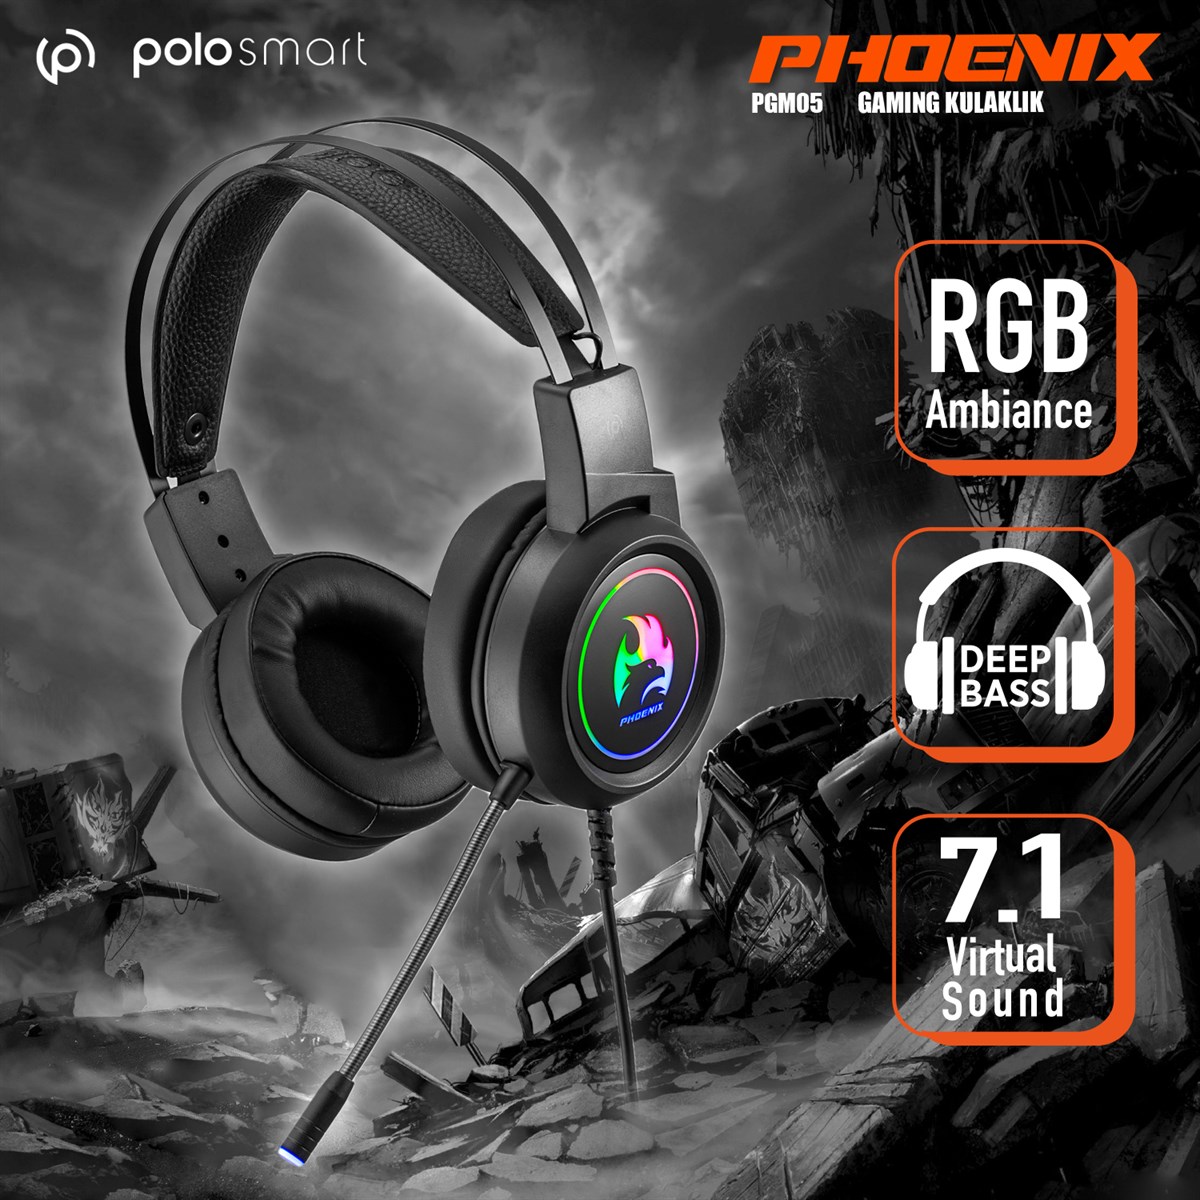 Polosmart Pgm05 Phoenix 7.1 Gaming Kablolu Kulaküstü Kulaklık Siyah,  Alışverişin Adresi'nde | Shopiglo